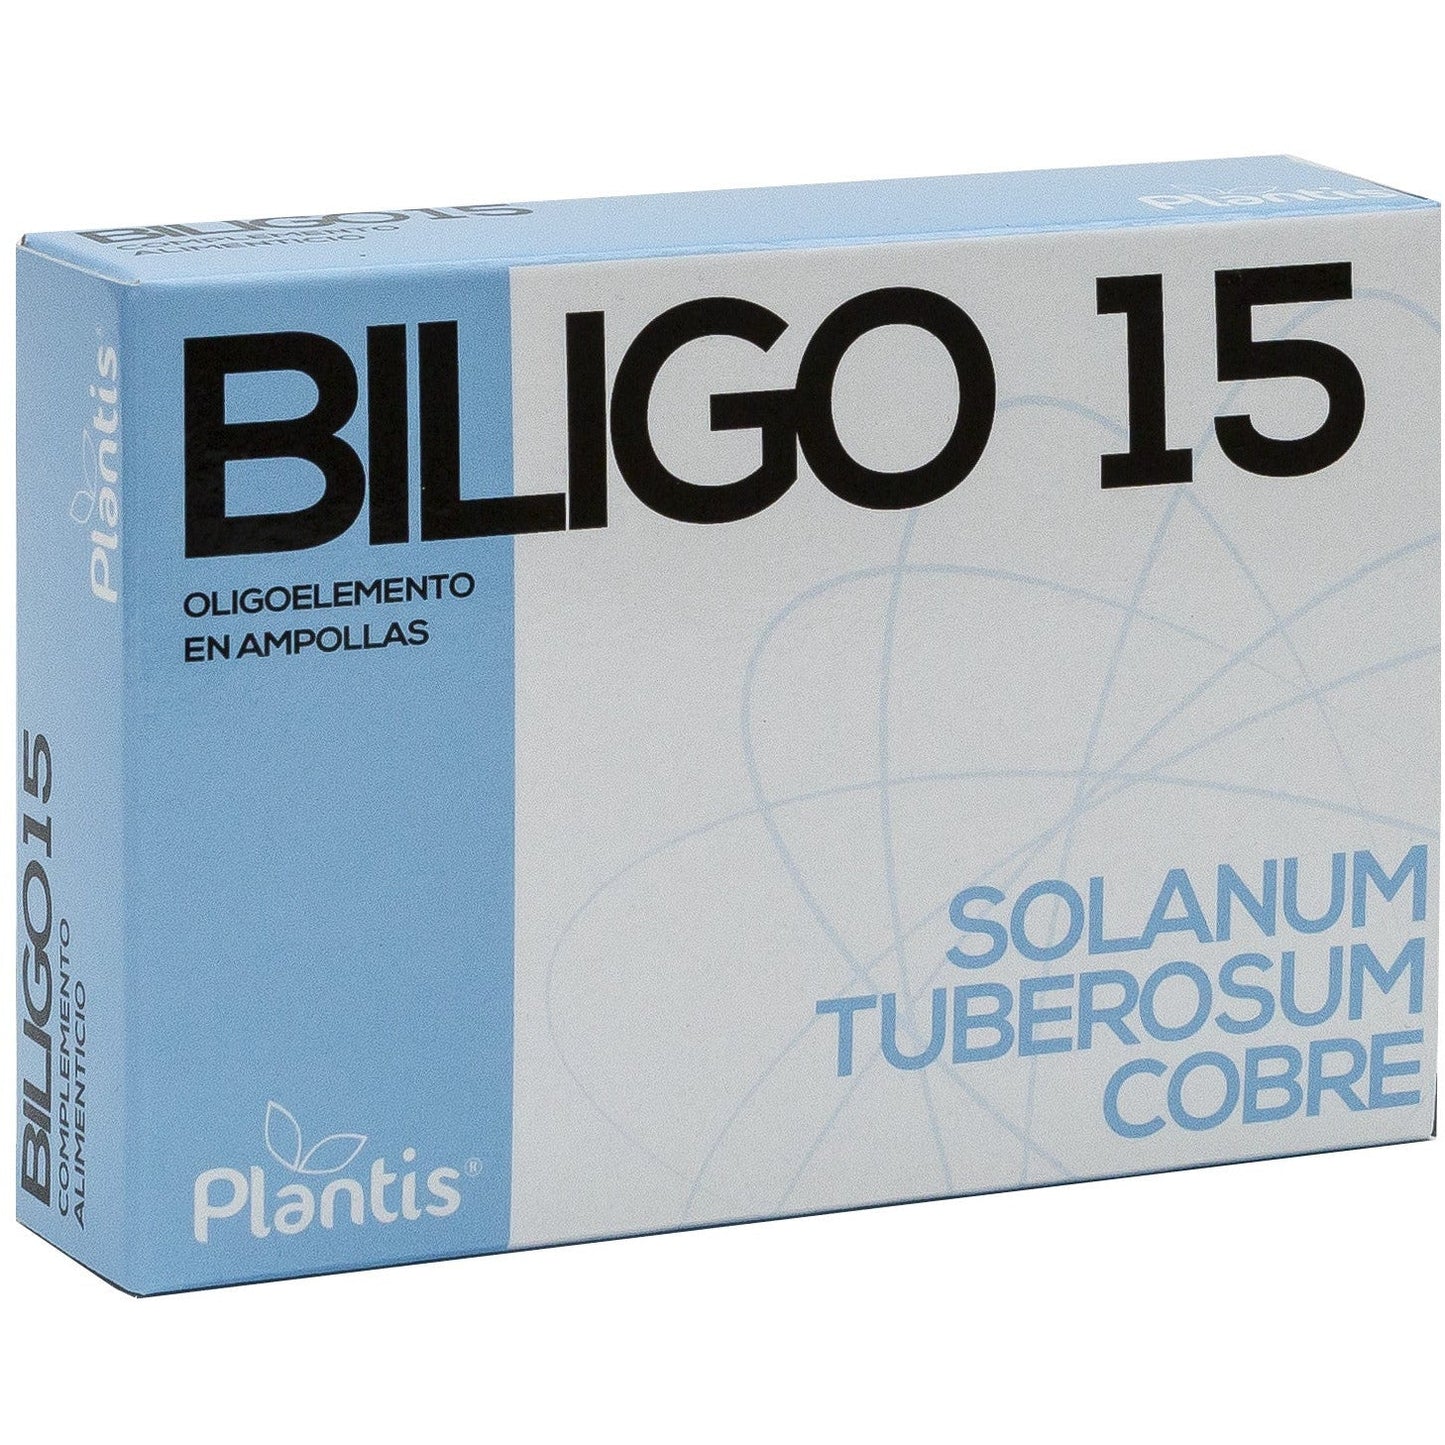 Biligo-15 20 ampollas | Artesania Agricola - Dietetica Ferrer